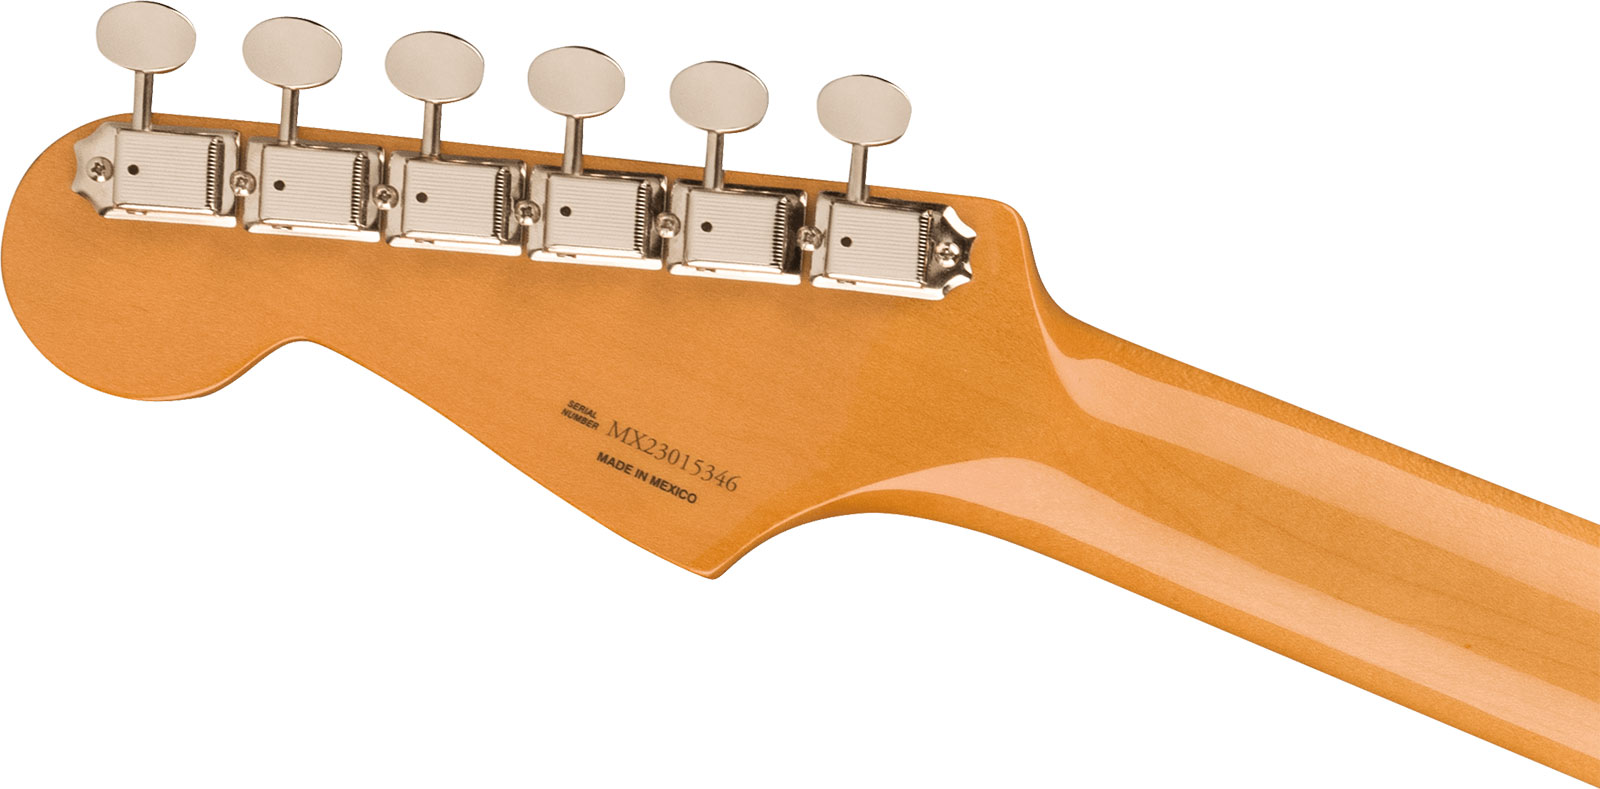 Fender Strat 60s Vintera 2 Mex 3s Trem Rw - 3-color Sunburst - Guitare Électrique Forme Str - Variation 3